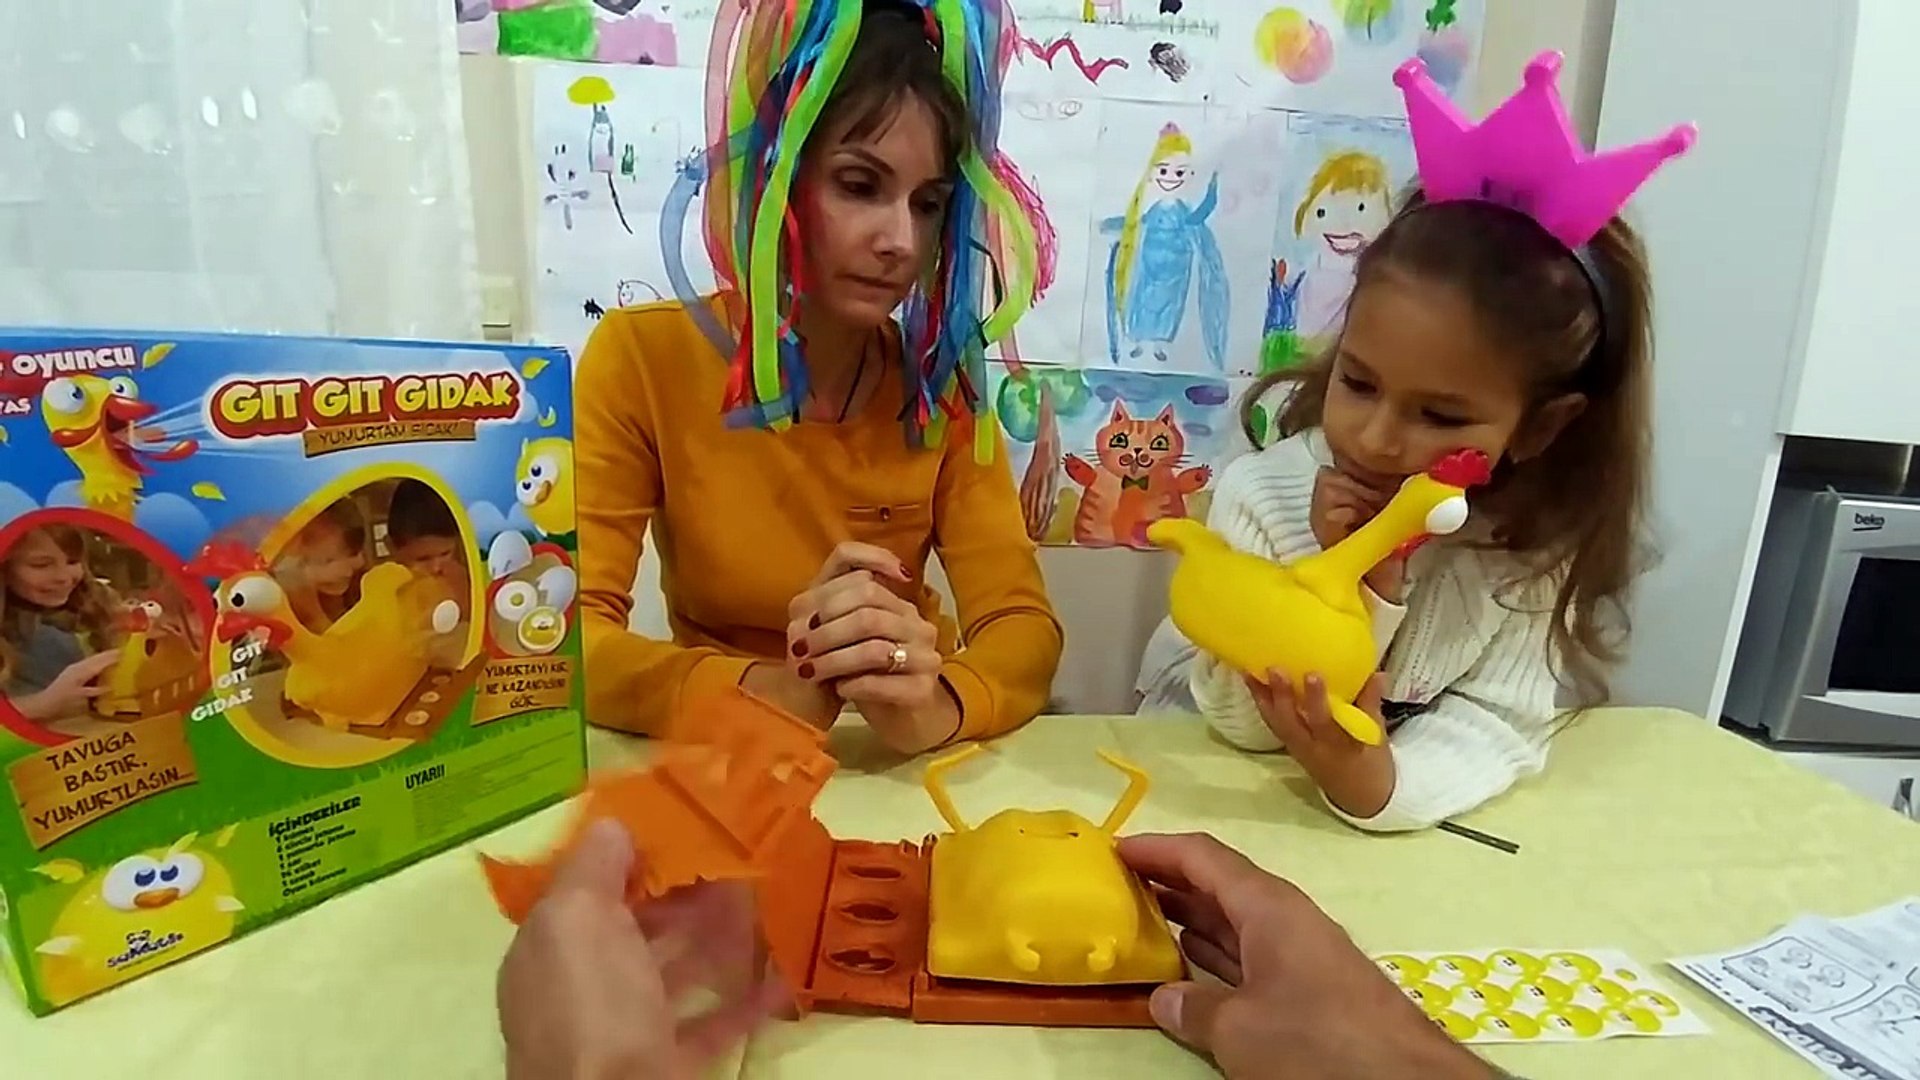 Gıt gıt gıdak tavuk oyuncak kutusu açtık, eğlenceli çocuk videosu, toys  unboxing - Dailymotion Video